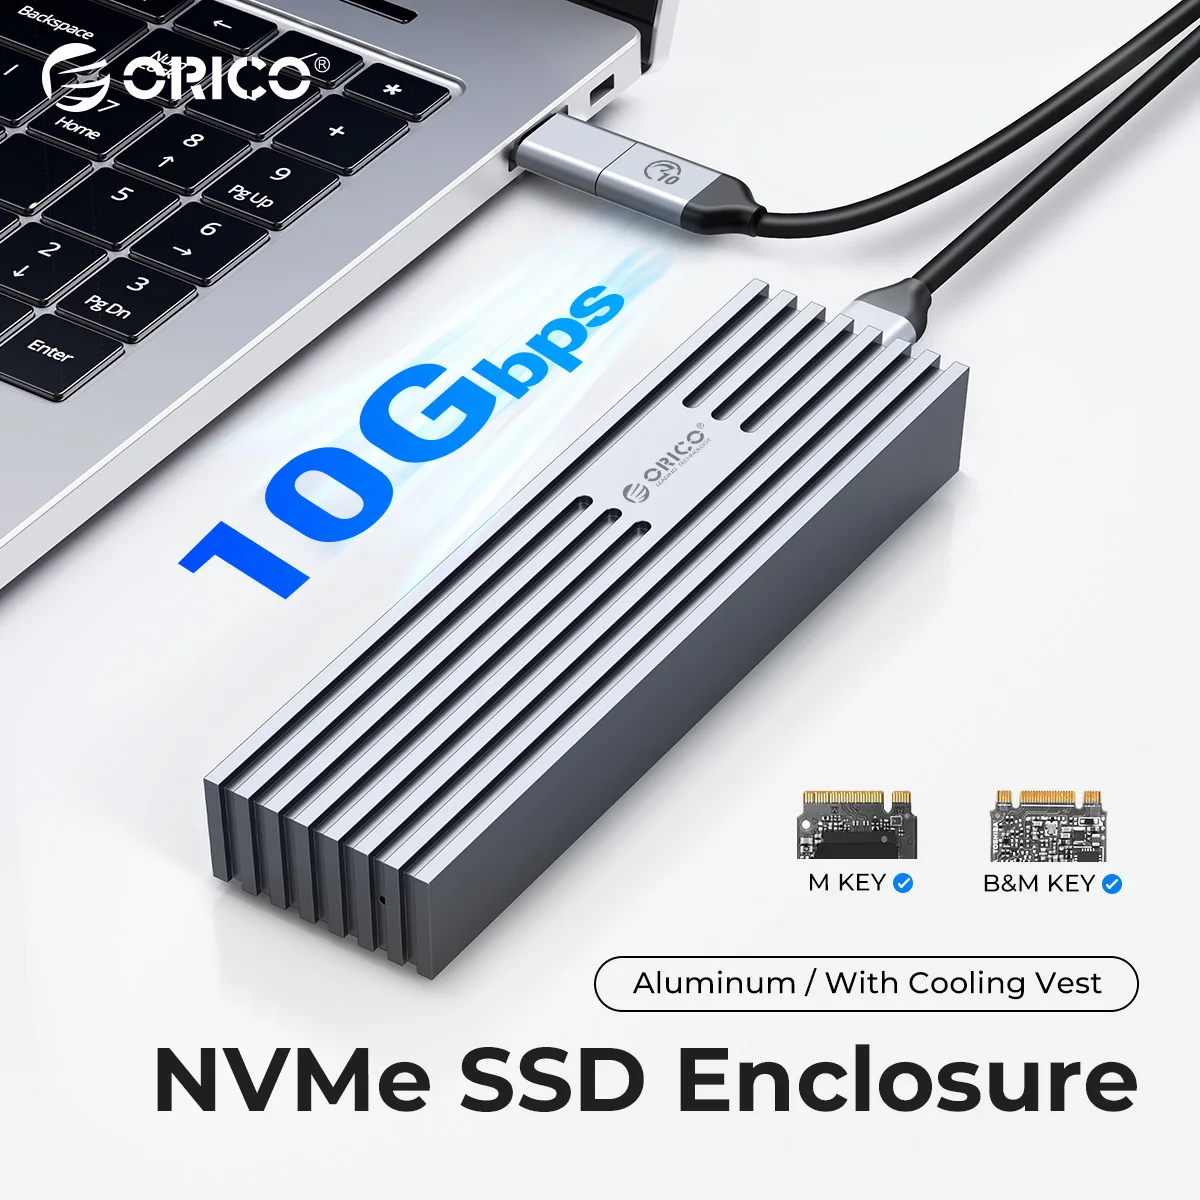 ORICO-Toda a liga de alumínio NVMe SSD, caixa de unidade de estado sólido com cabo, chave NVMe M, 10Gbps, PCIe M2 SSD, atualizado